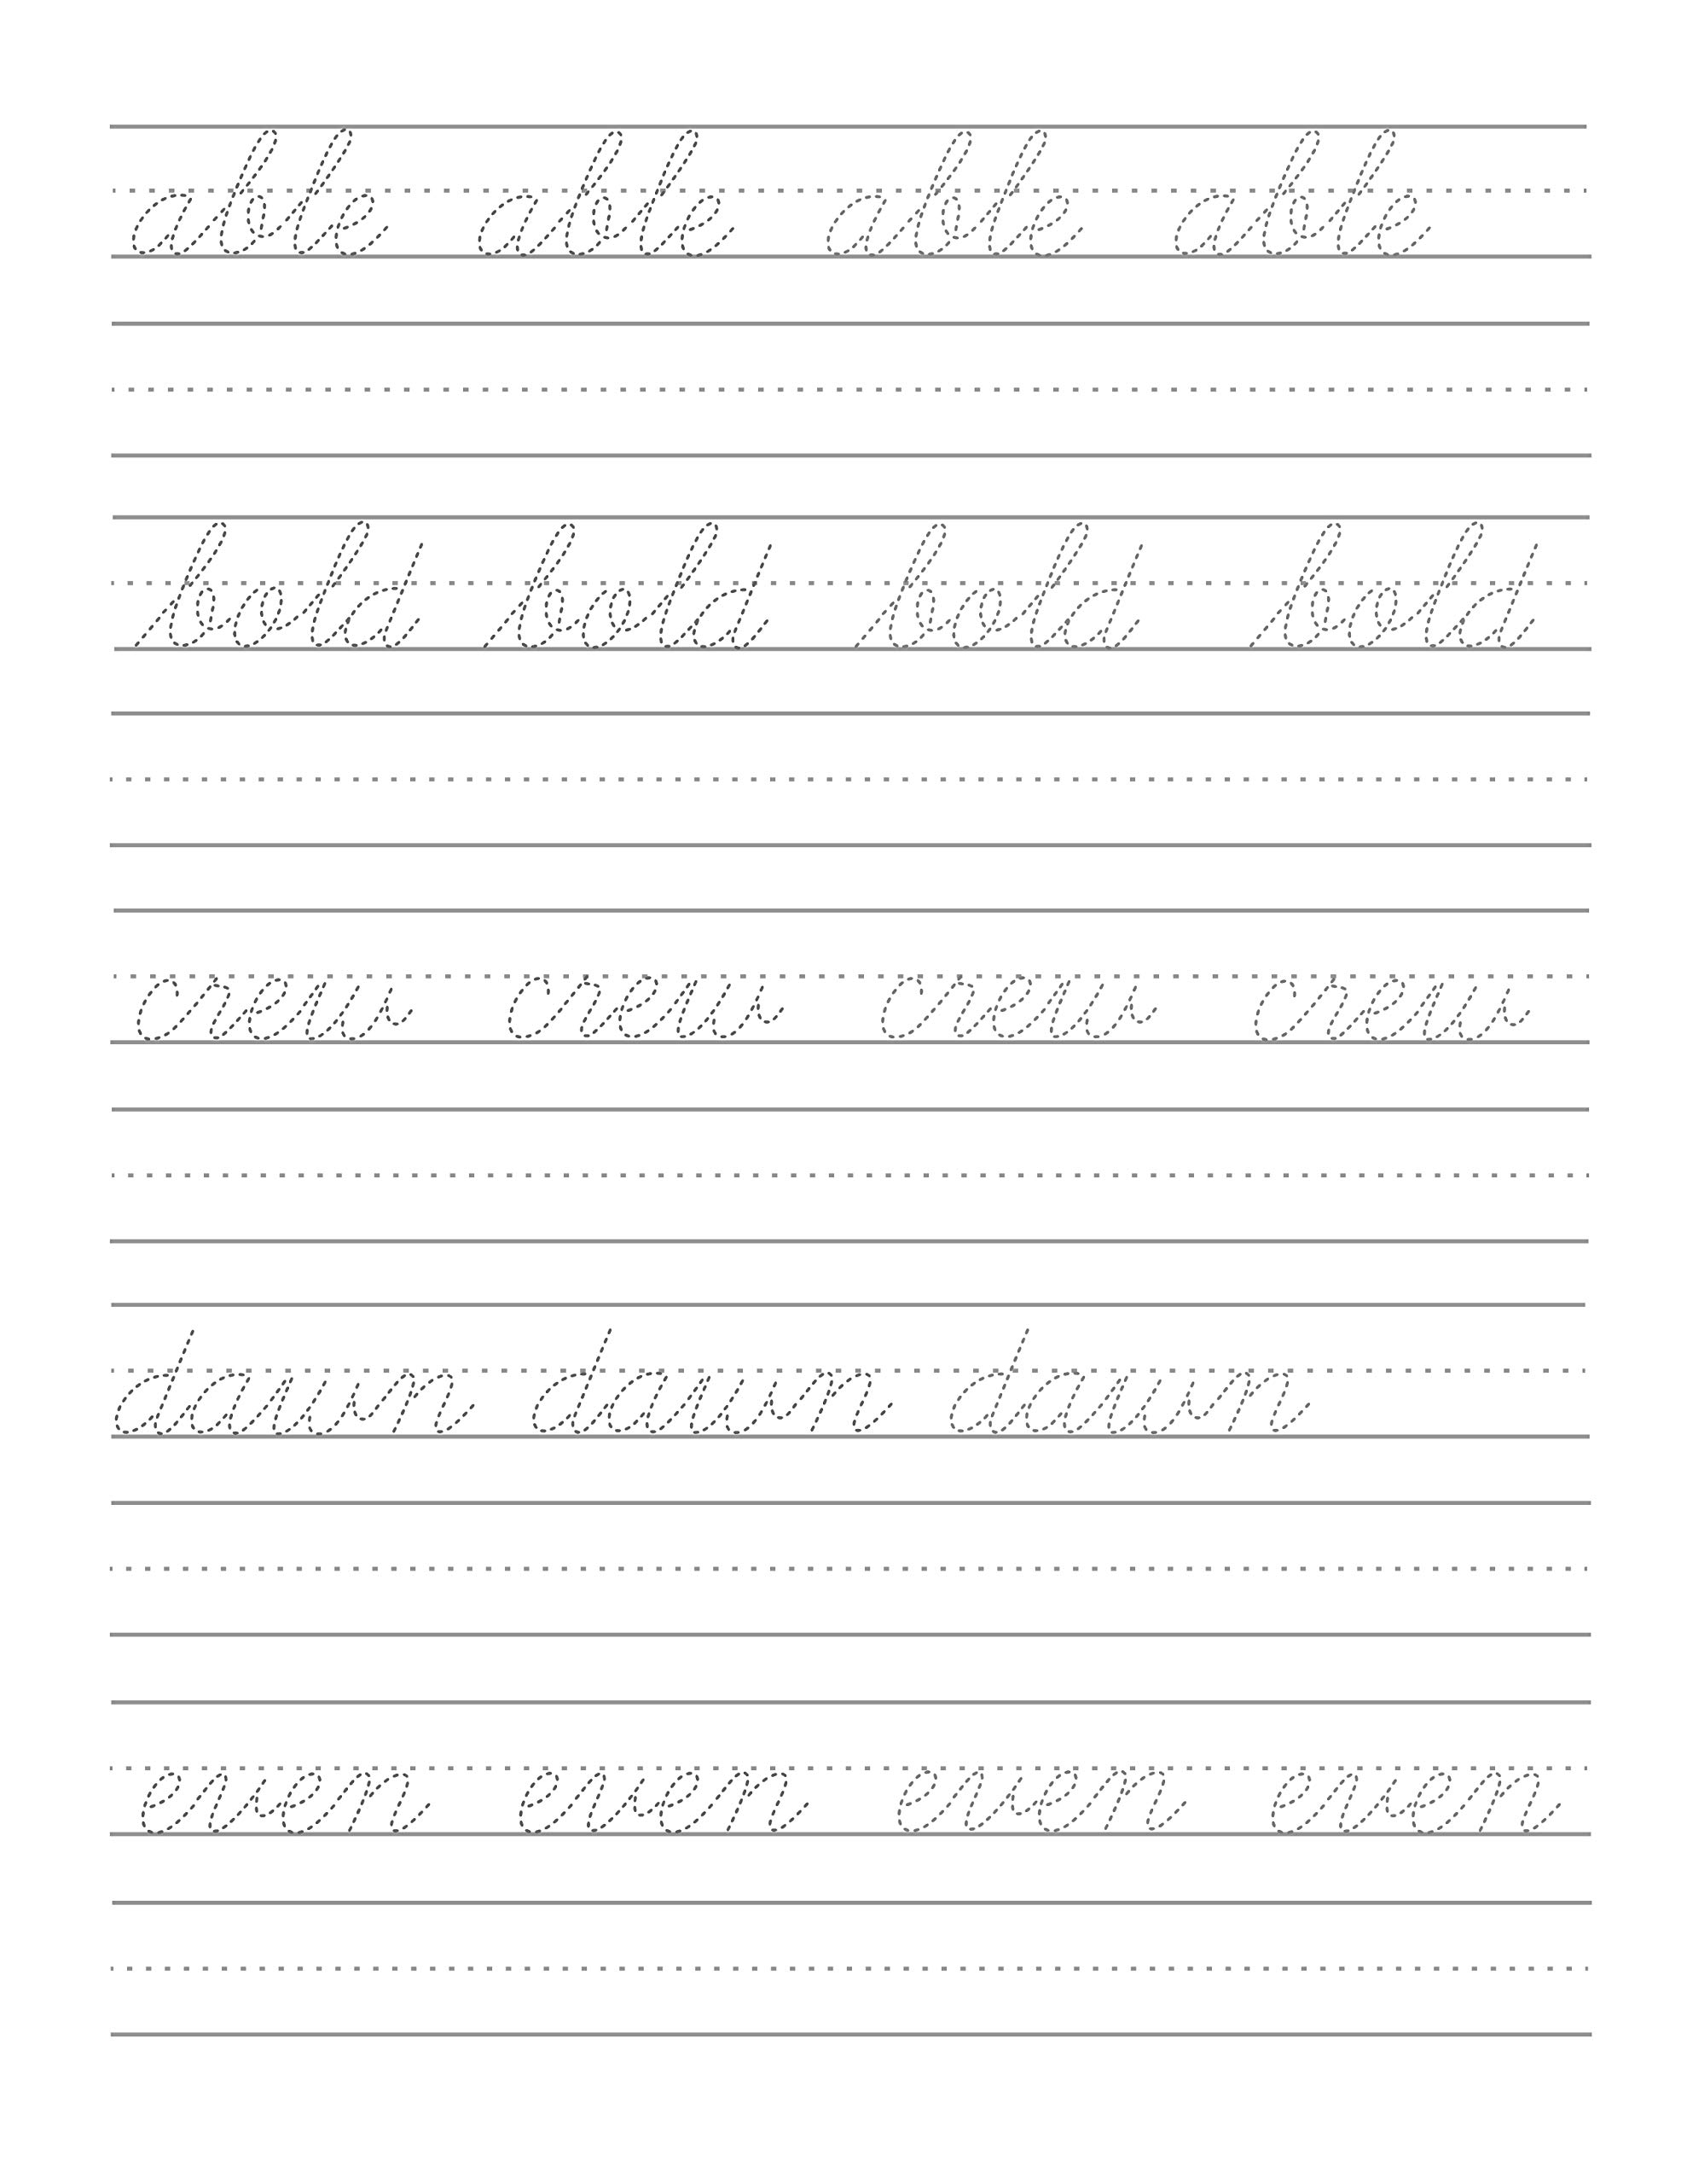 Worksheet ~ Cursive Handwriting Worksheets Days Of The Week